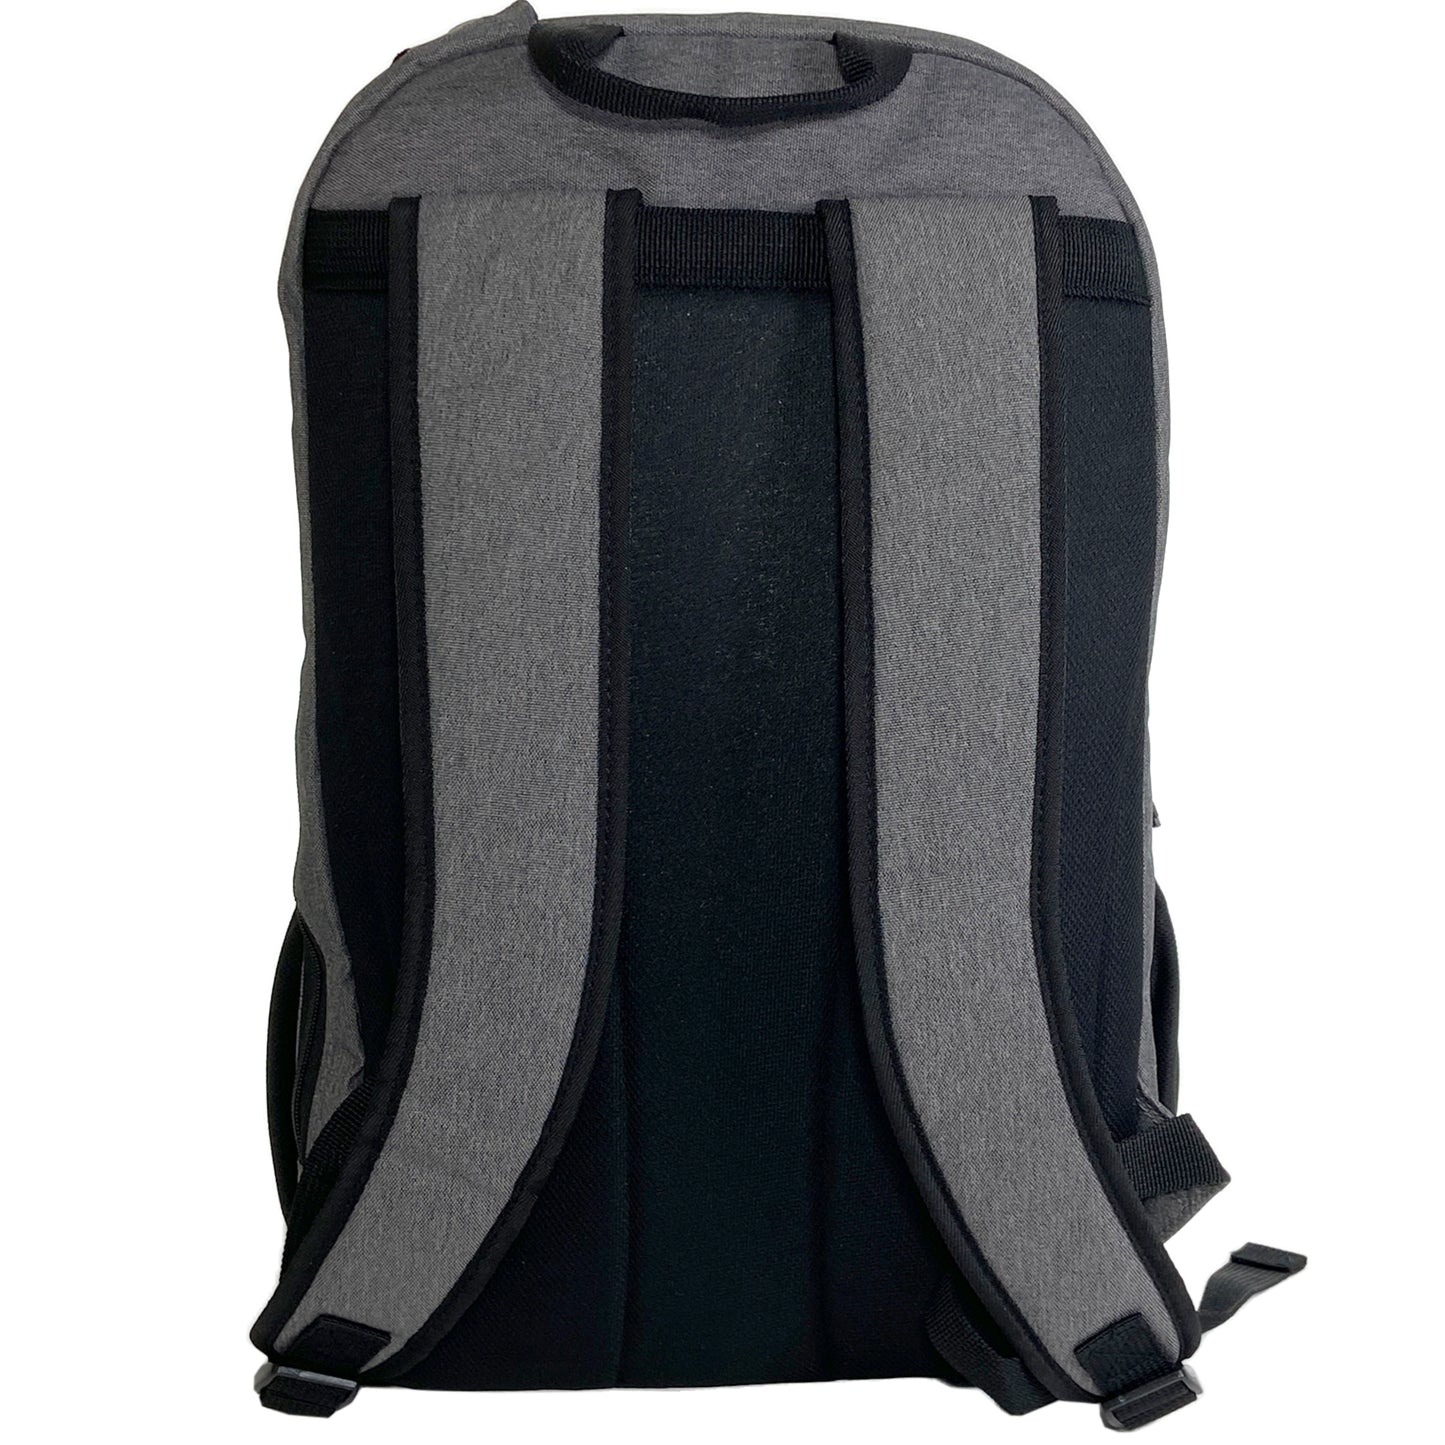 Yonex sac à dos Active Small (BA82212S) Noir/Rouge